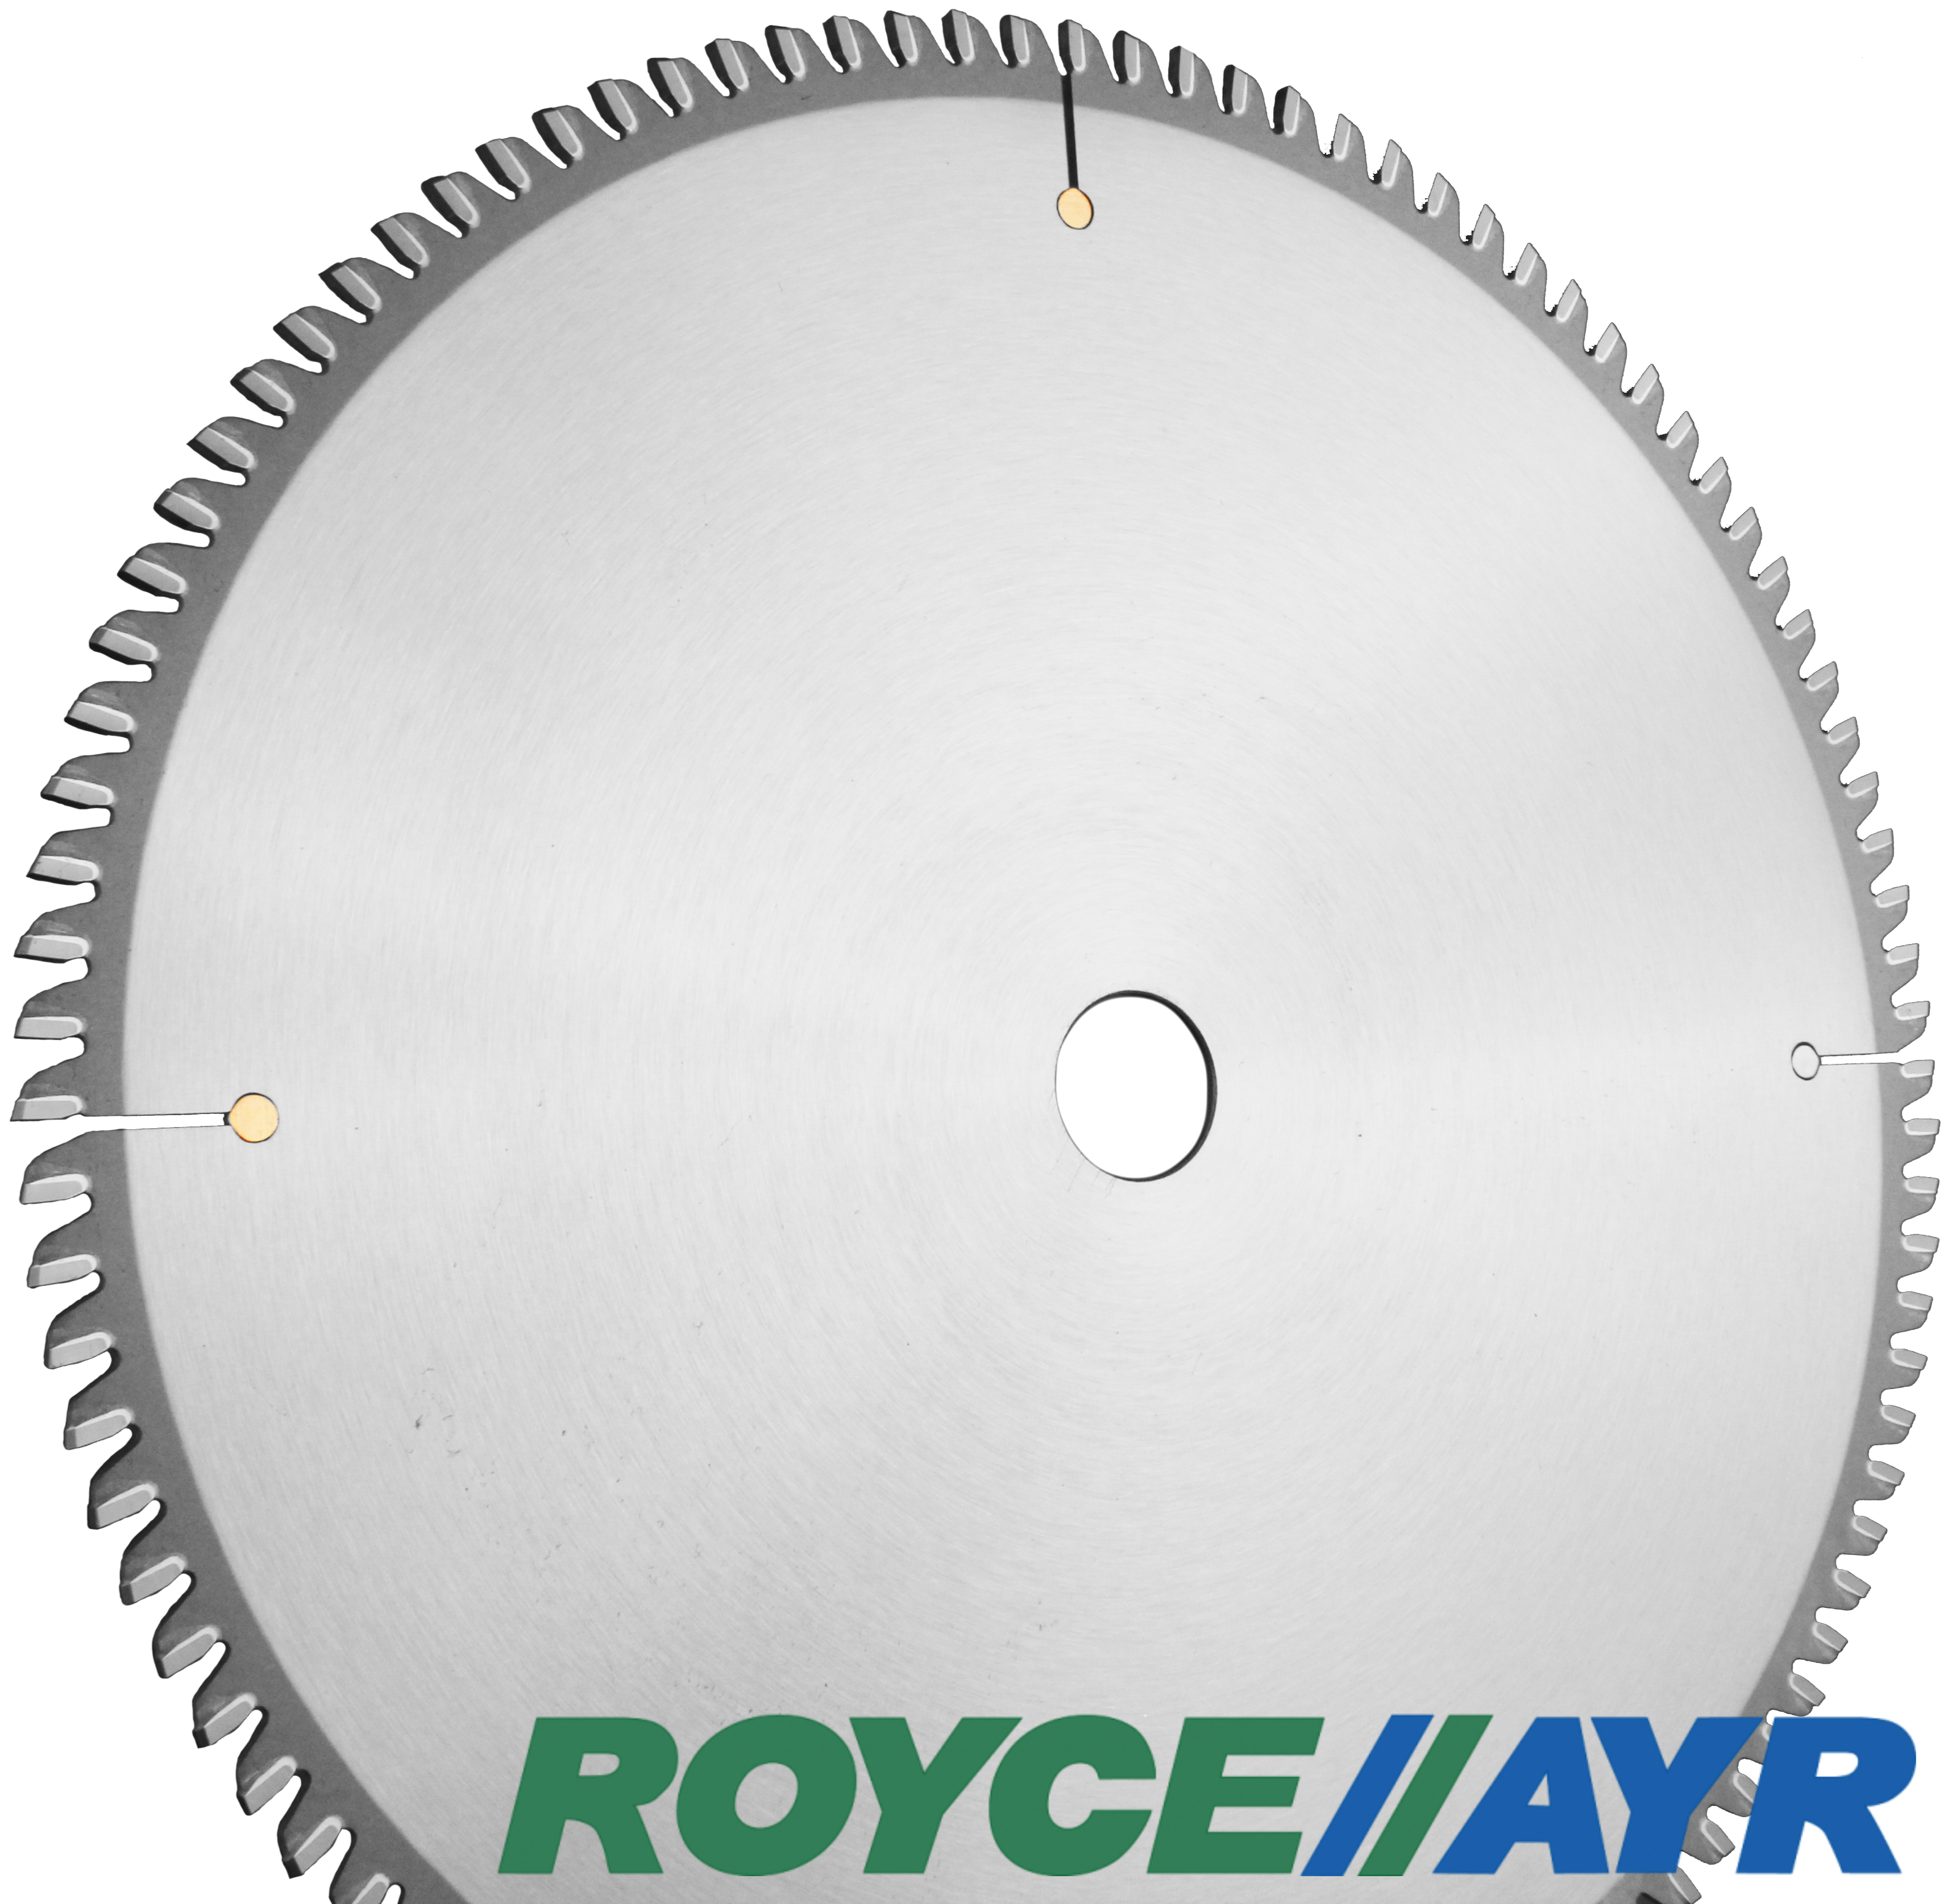 Royce//Ayr - S25 Plastique | Produit